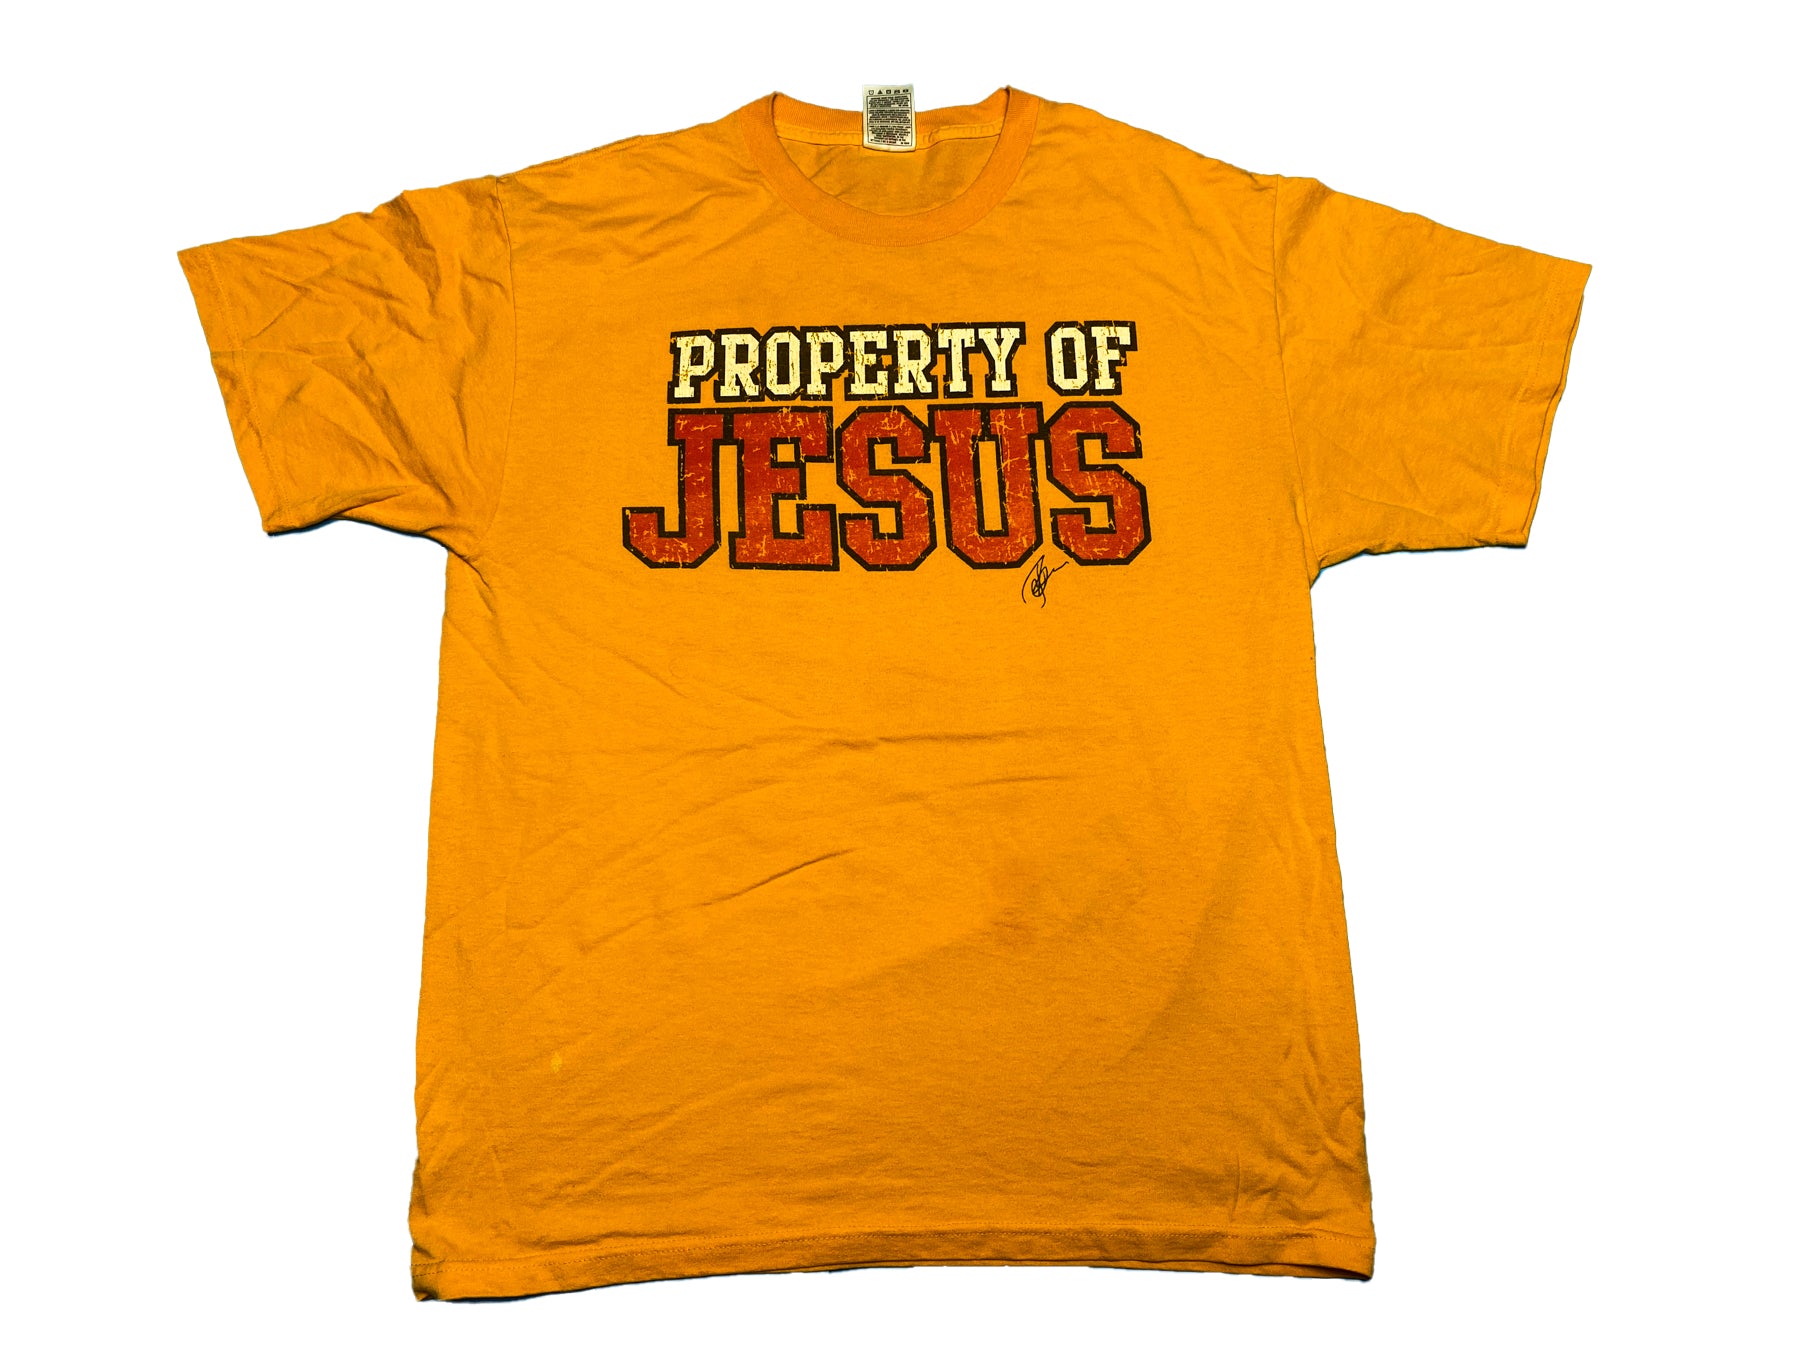 Vintage Jesus Tee Shirts in Size Large and XLarge – Vintage Jesus Tees